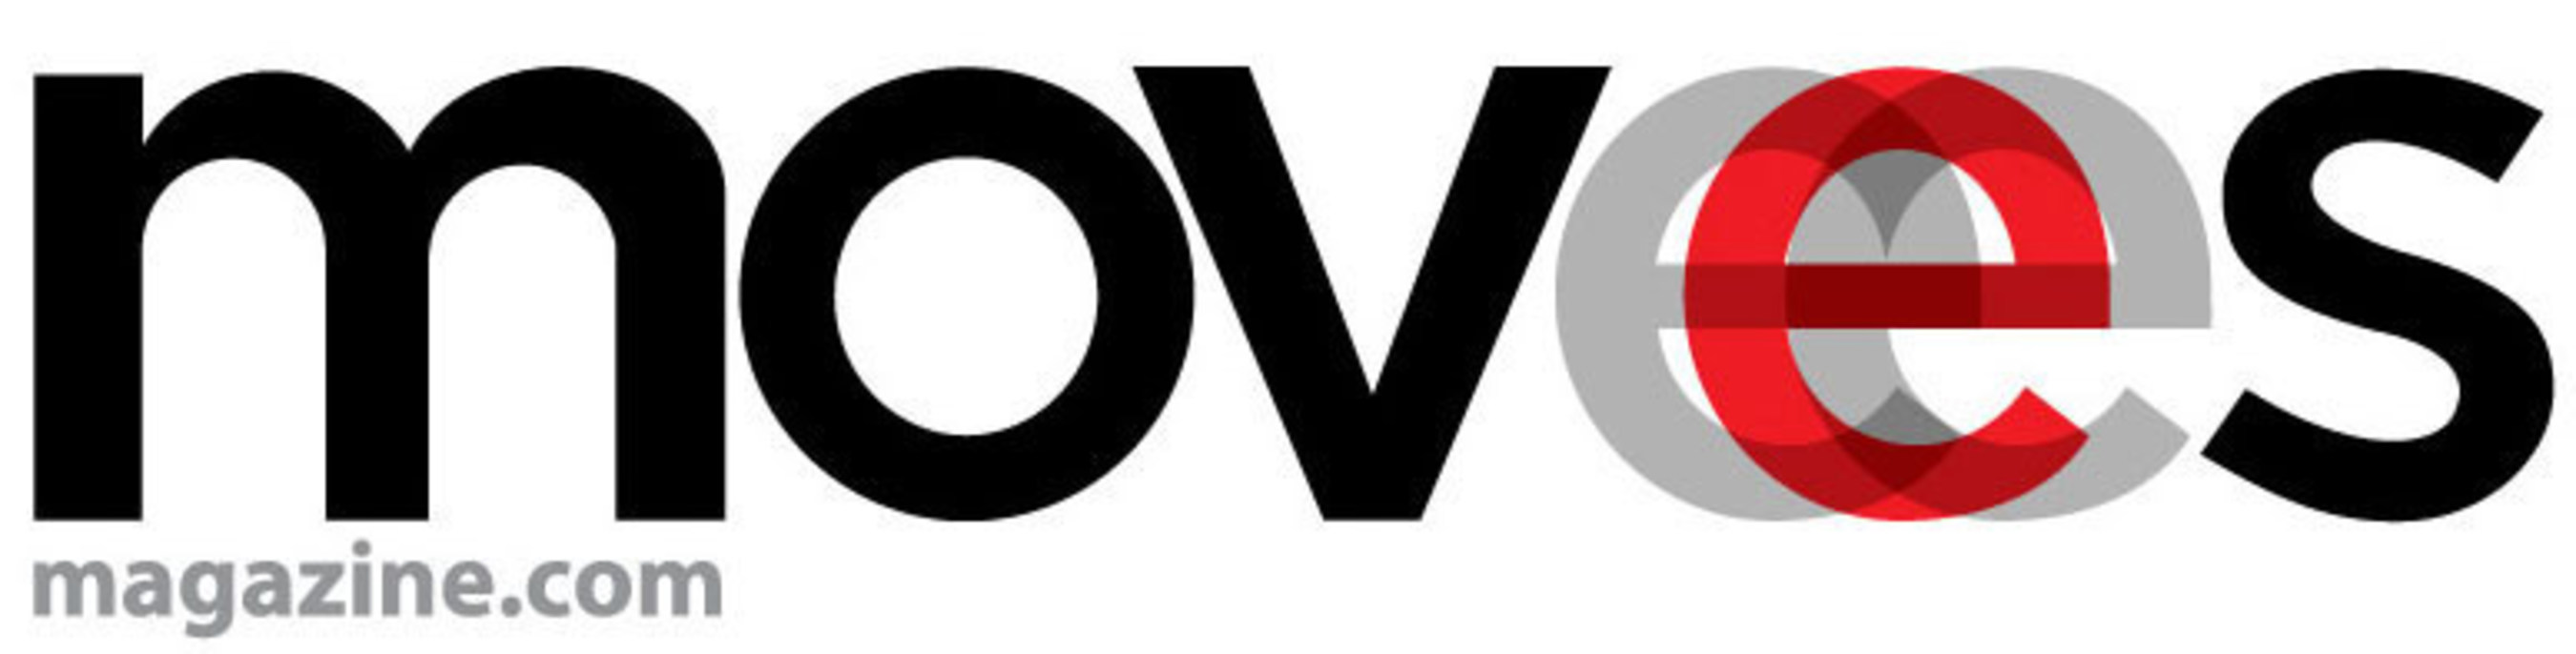 Moves Media Ventures, LLC logo